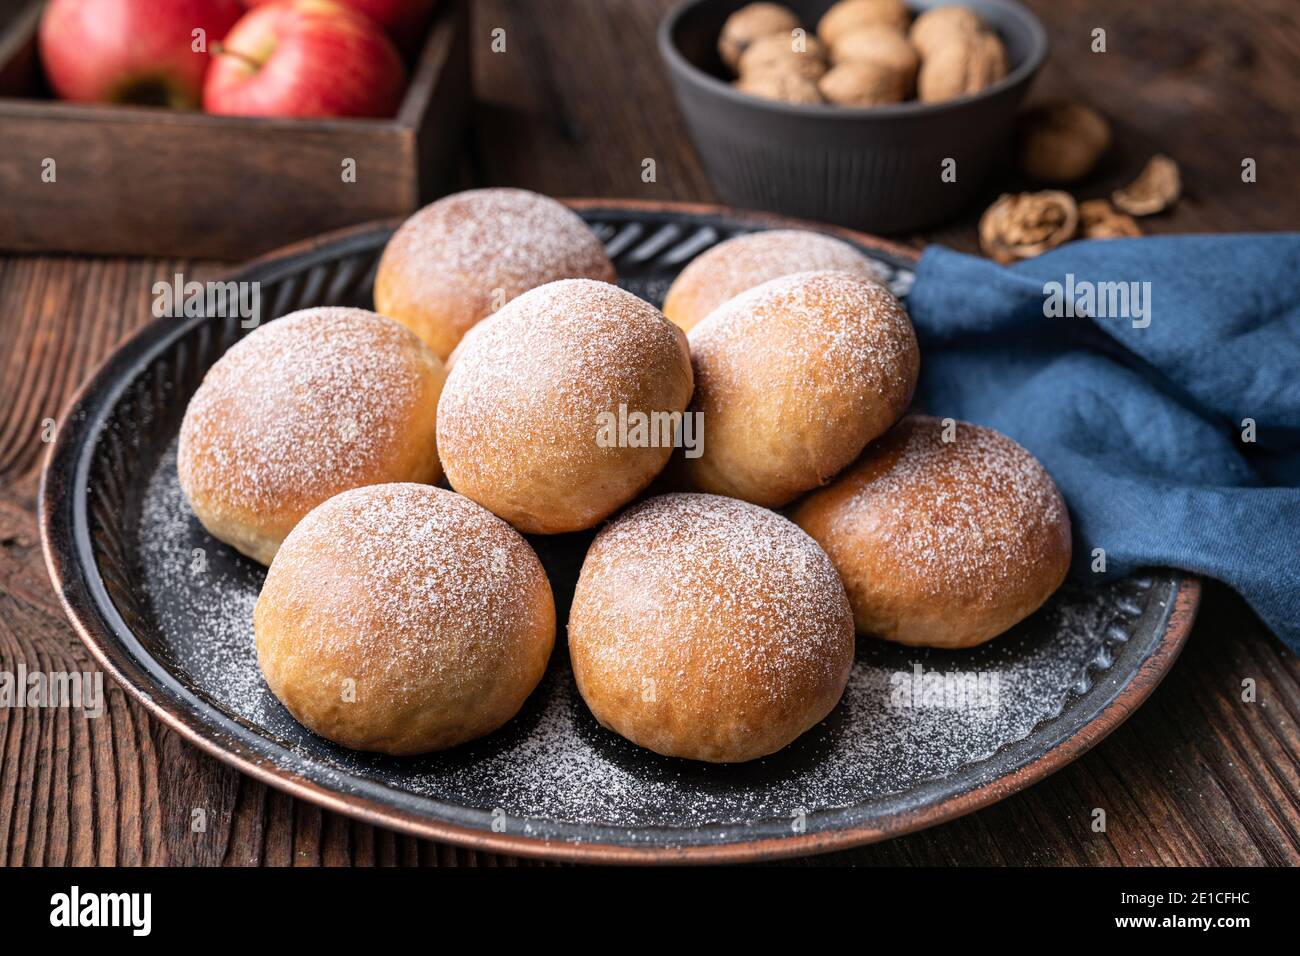 Délicieuse pâtisserie sucrée, petits pains cuits avec garniture aux pommes et aux noix, saupoudrés de sucre en poudre Banque D'Images